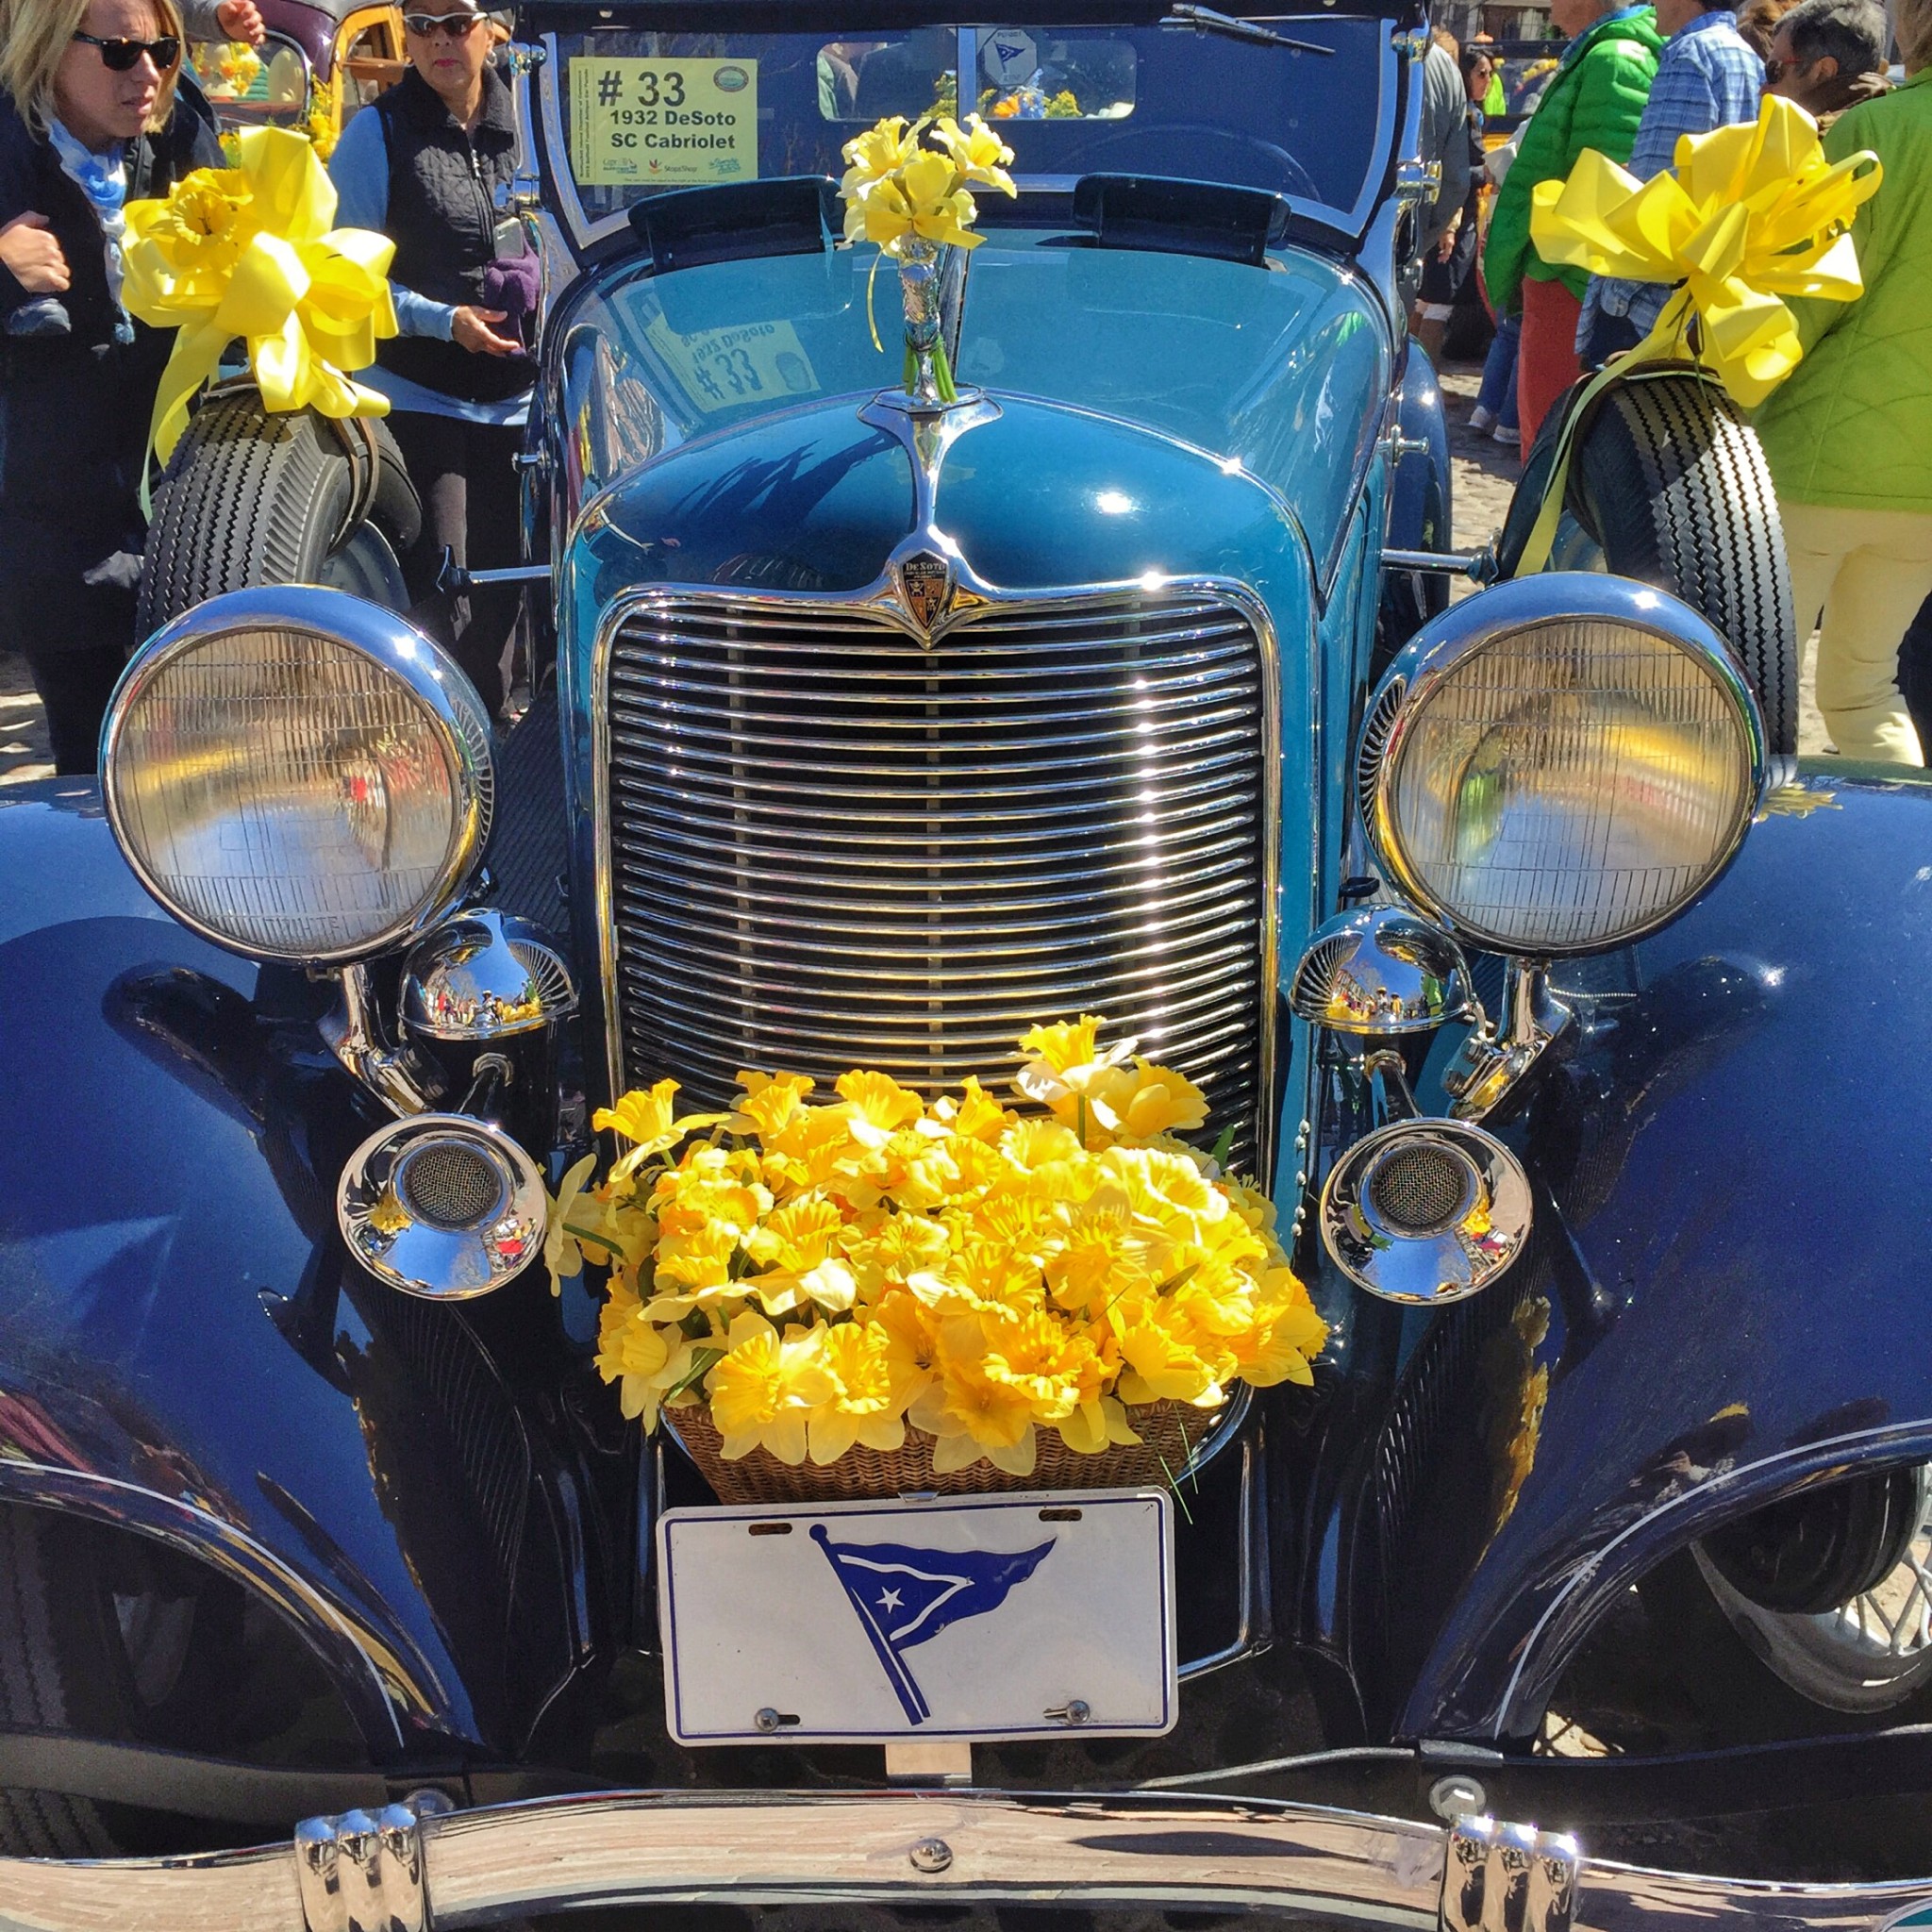 nantucket daffodil festival, the-alyst.com